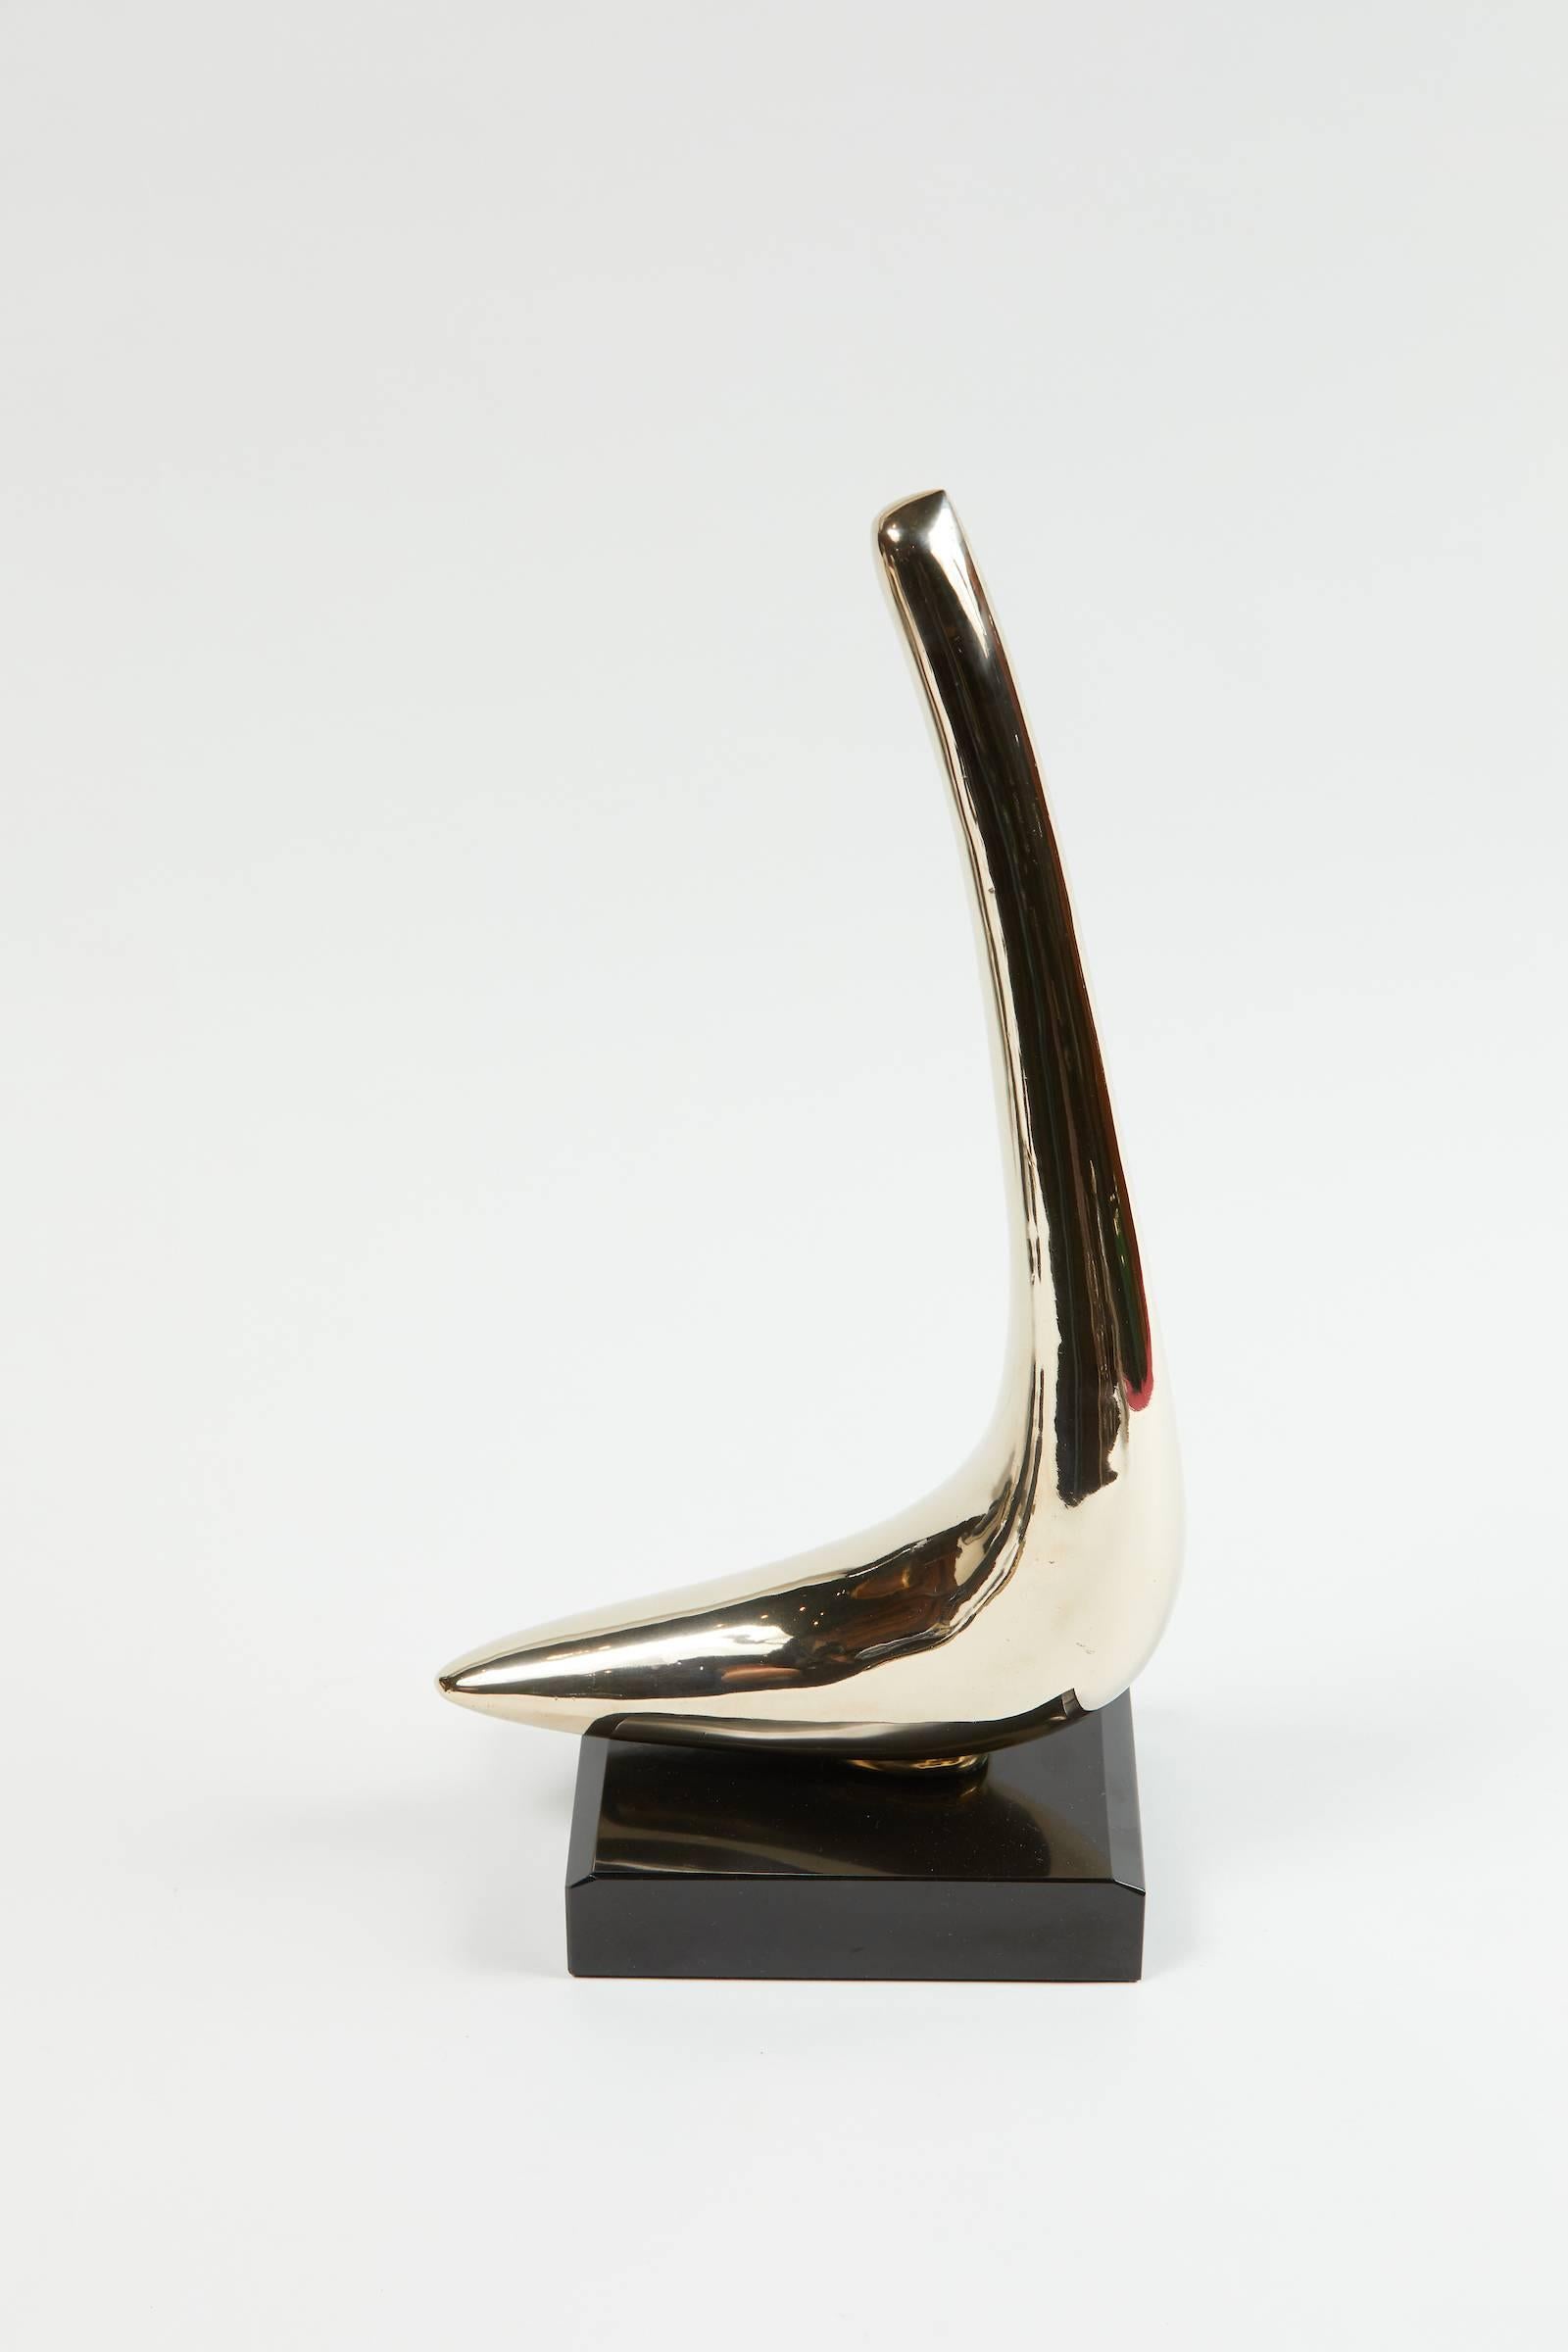 polished bronze sculpture